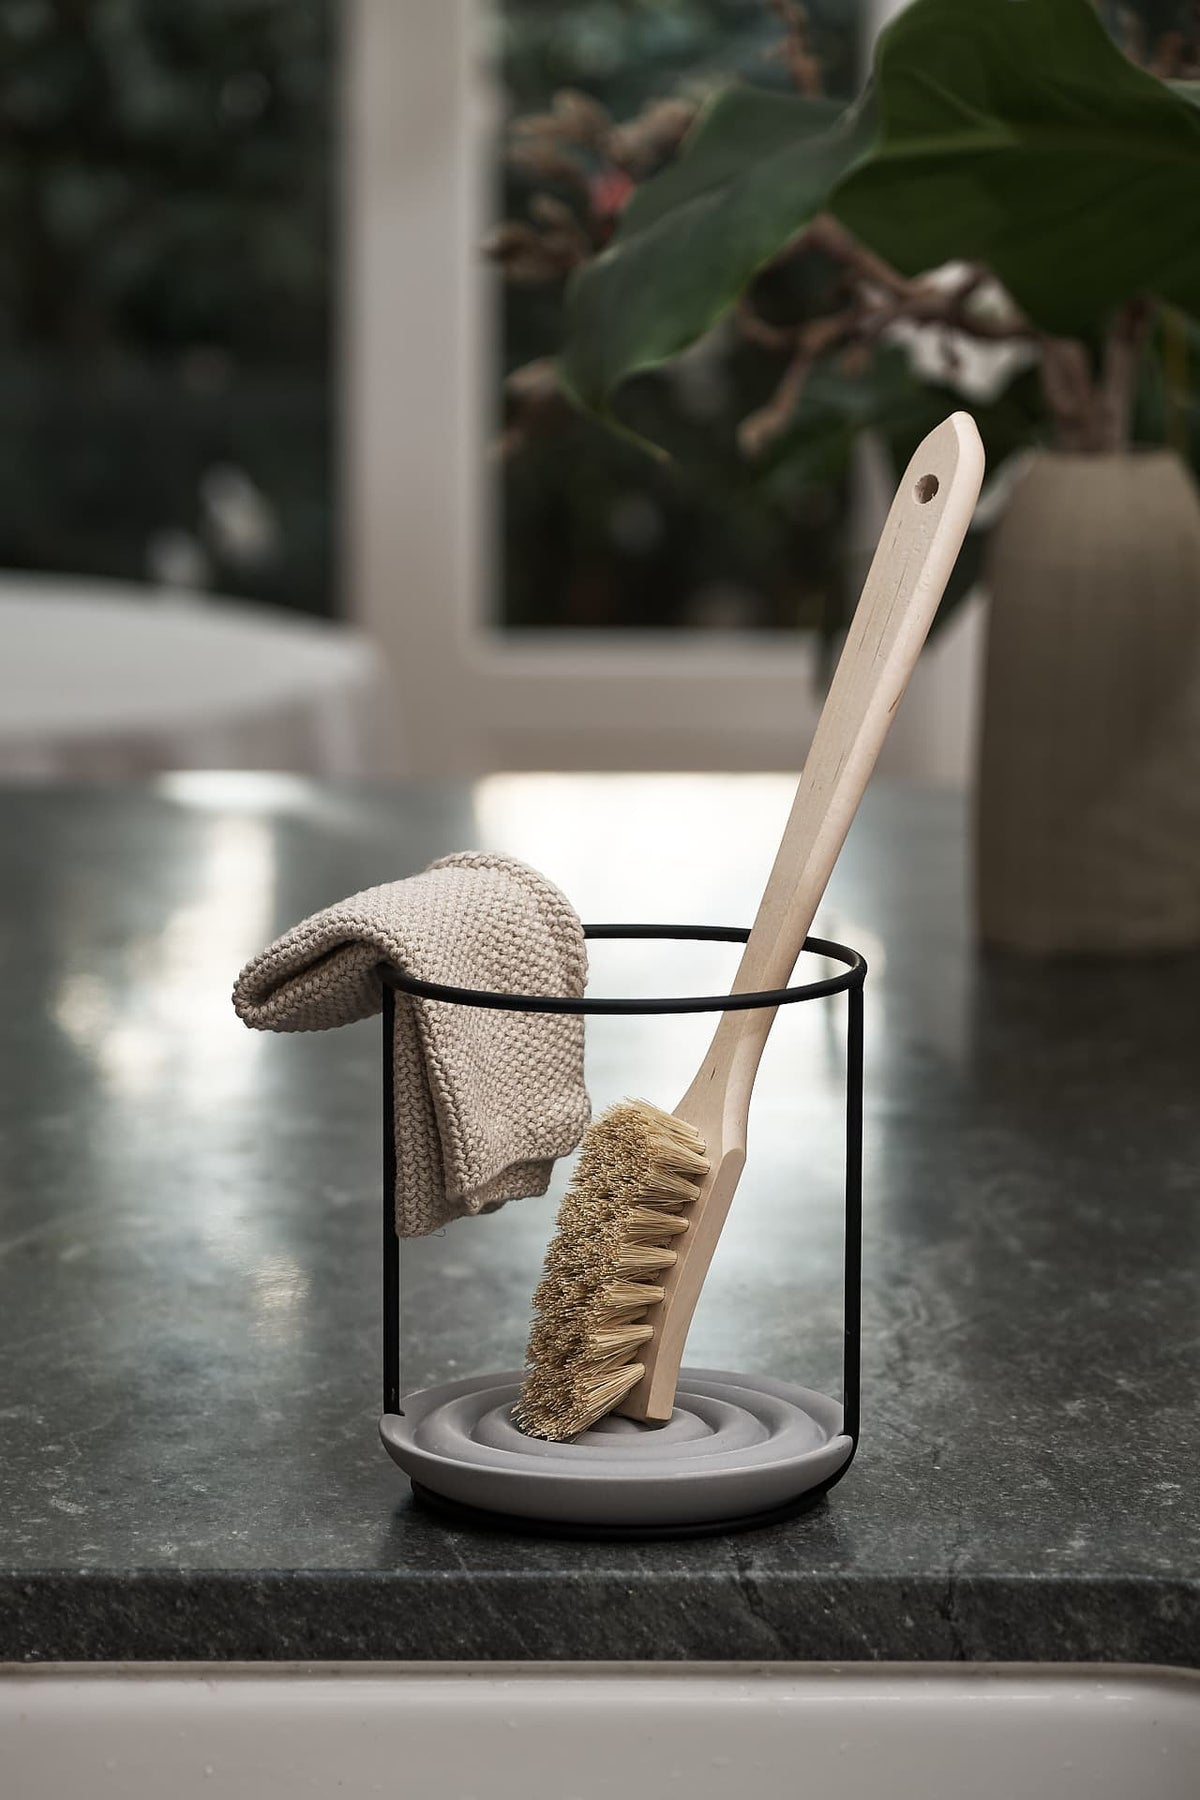 An Iris Hantverk Dish Brush Holder on top of a kitchen bench.